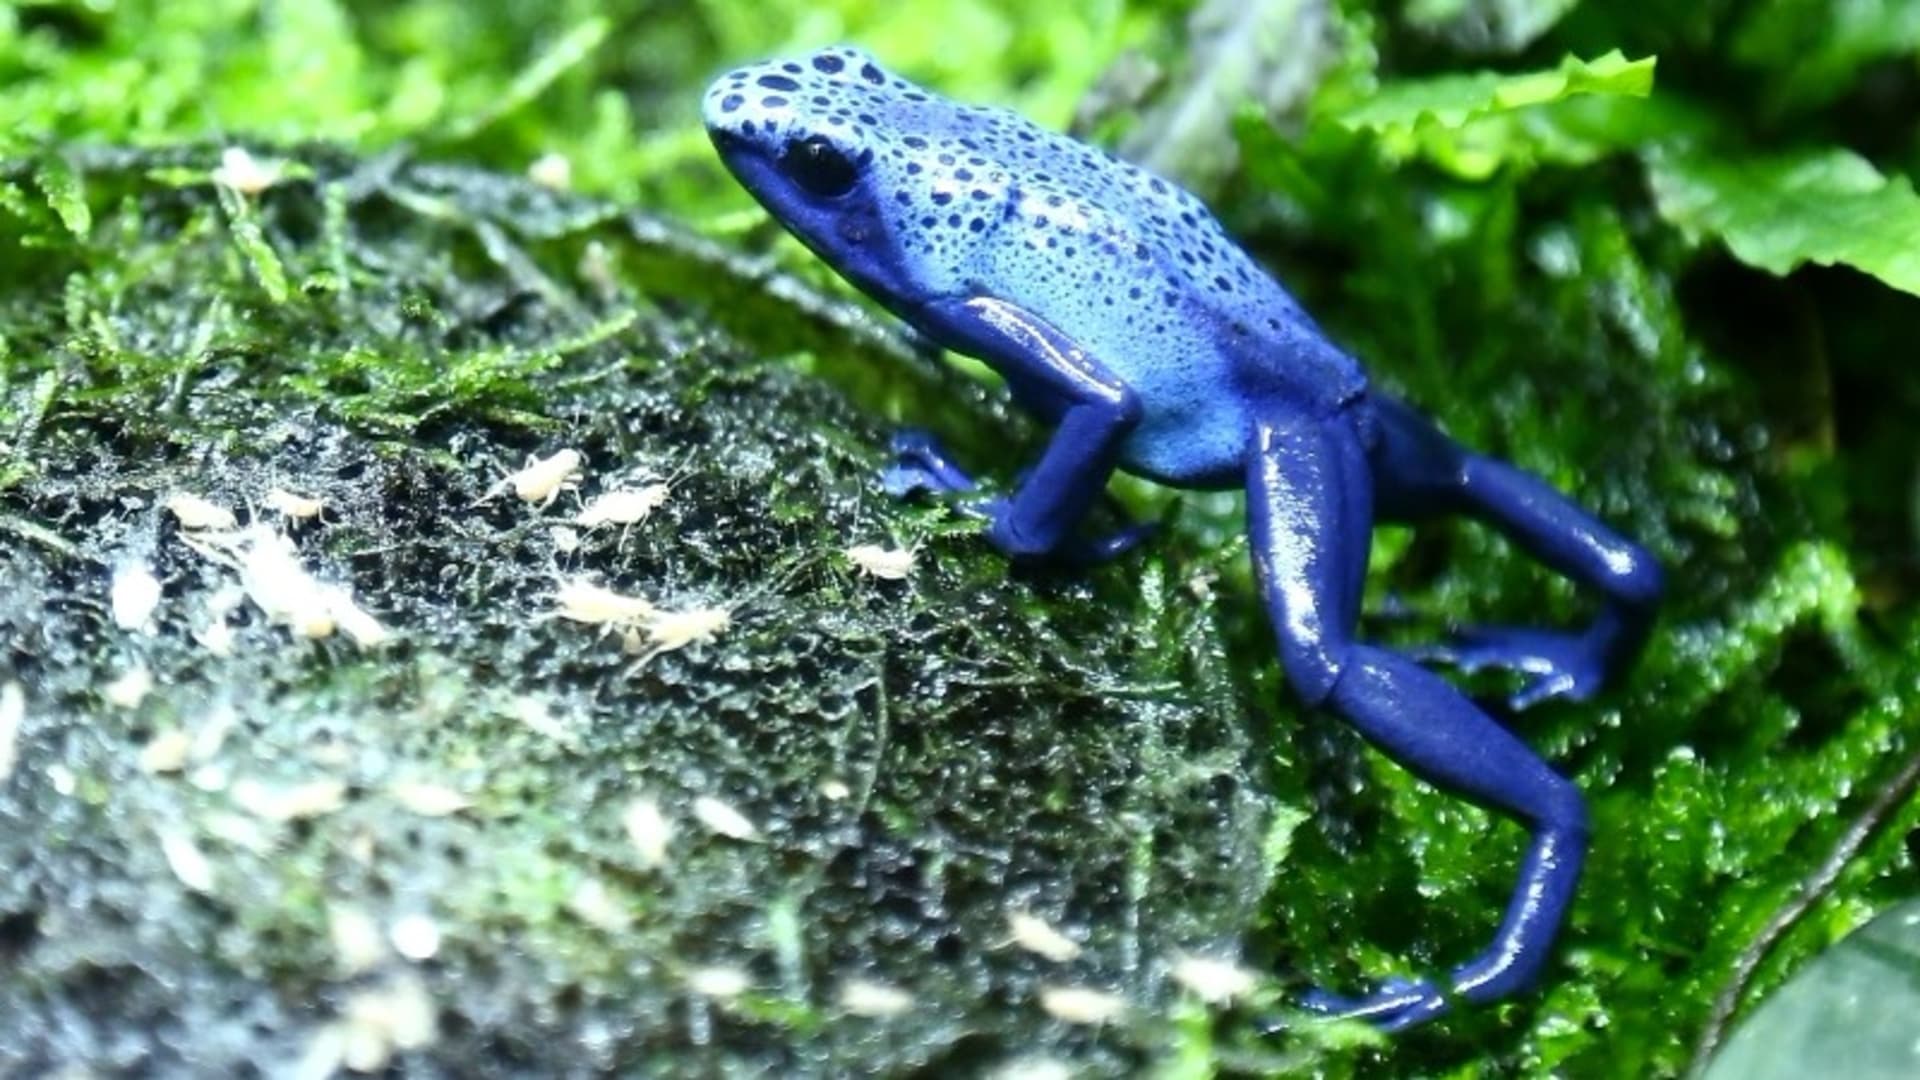 RECEPTÁŘ PRIMA NÁPADŮ: Jsou nádherně barevné žabky pralesničky opravdu jedovaté?